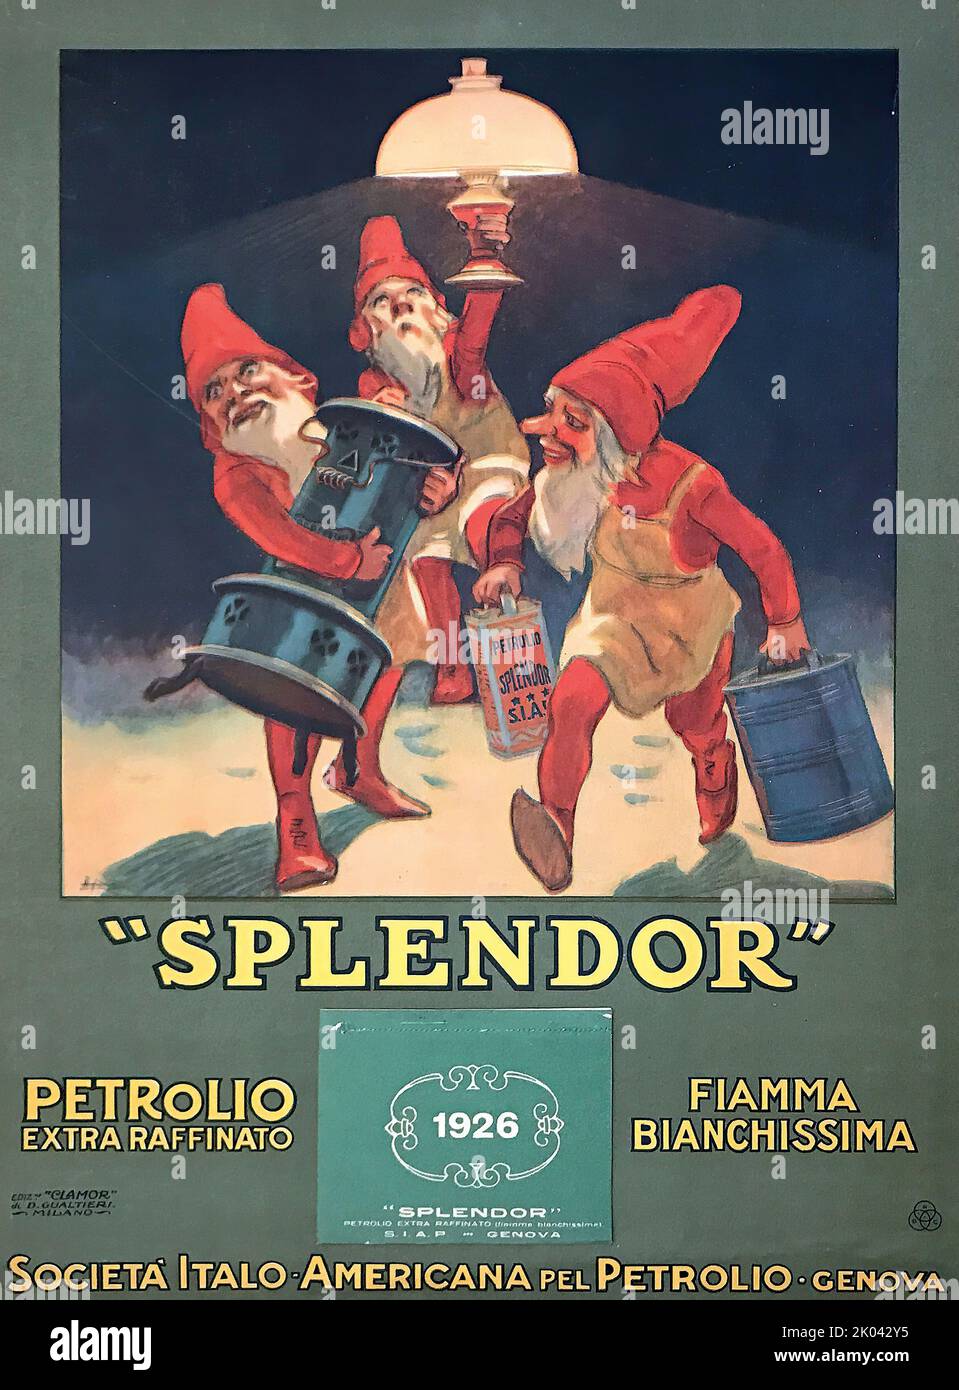 Splendor. Petrolio Extra Raffinato. Private Collection. Stock Photo